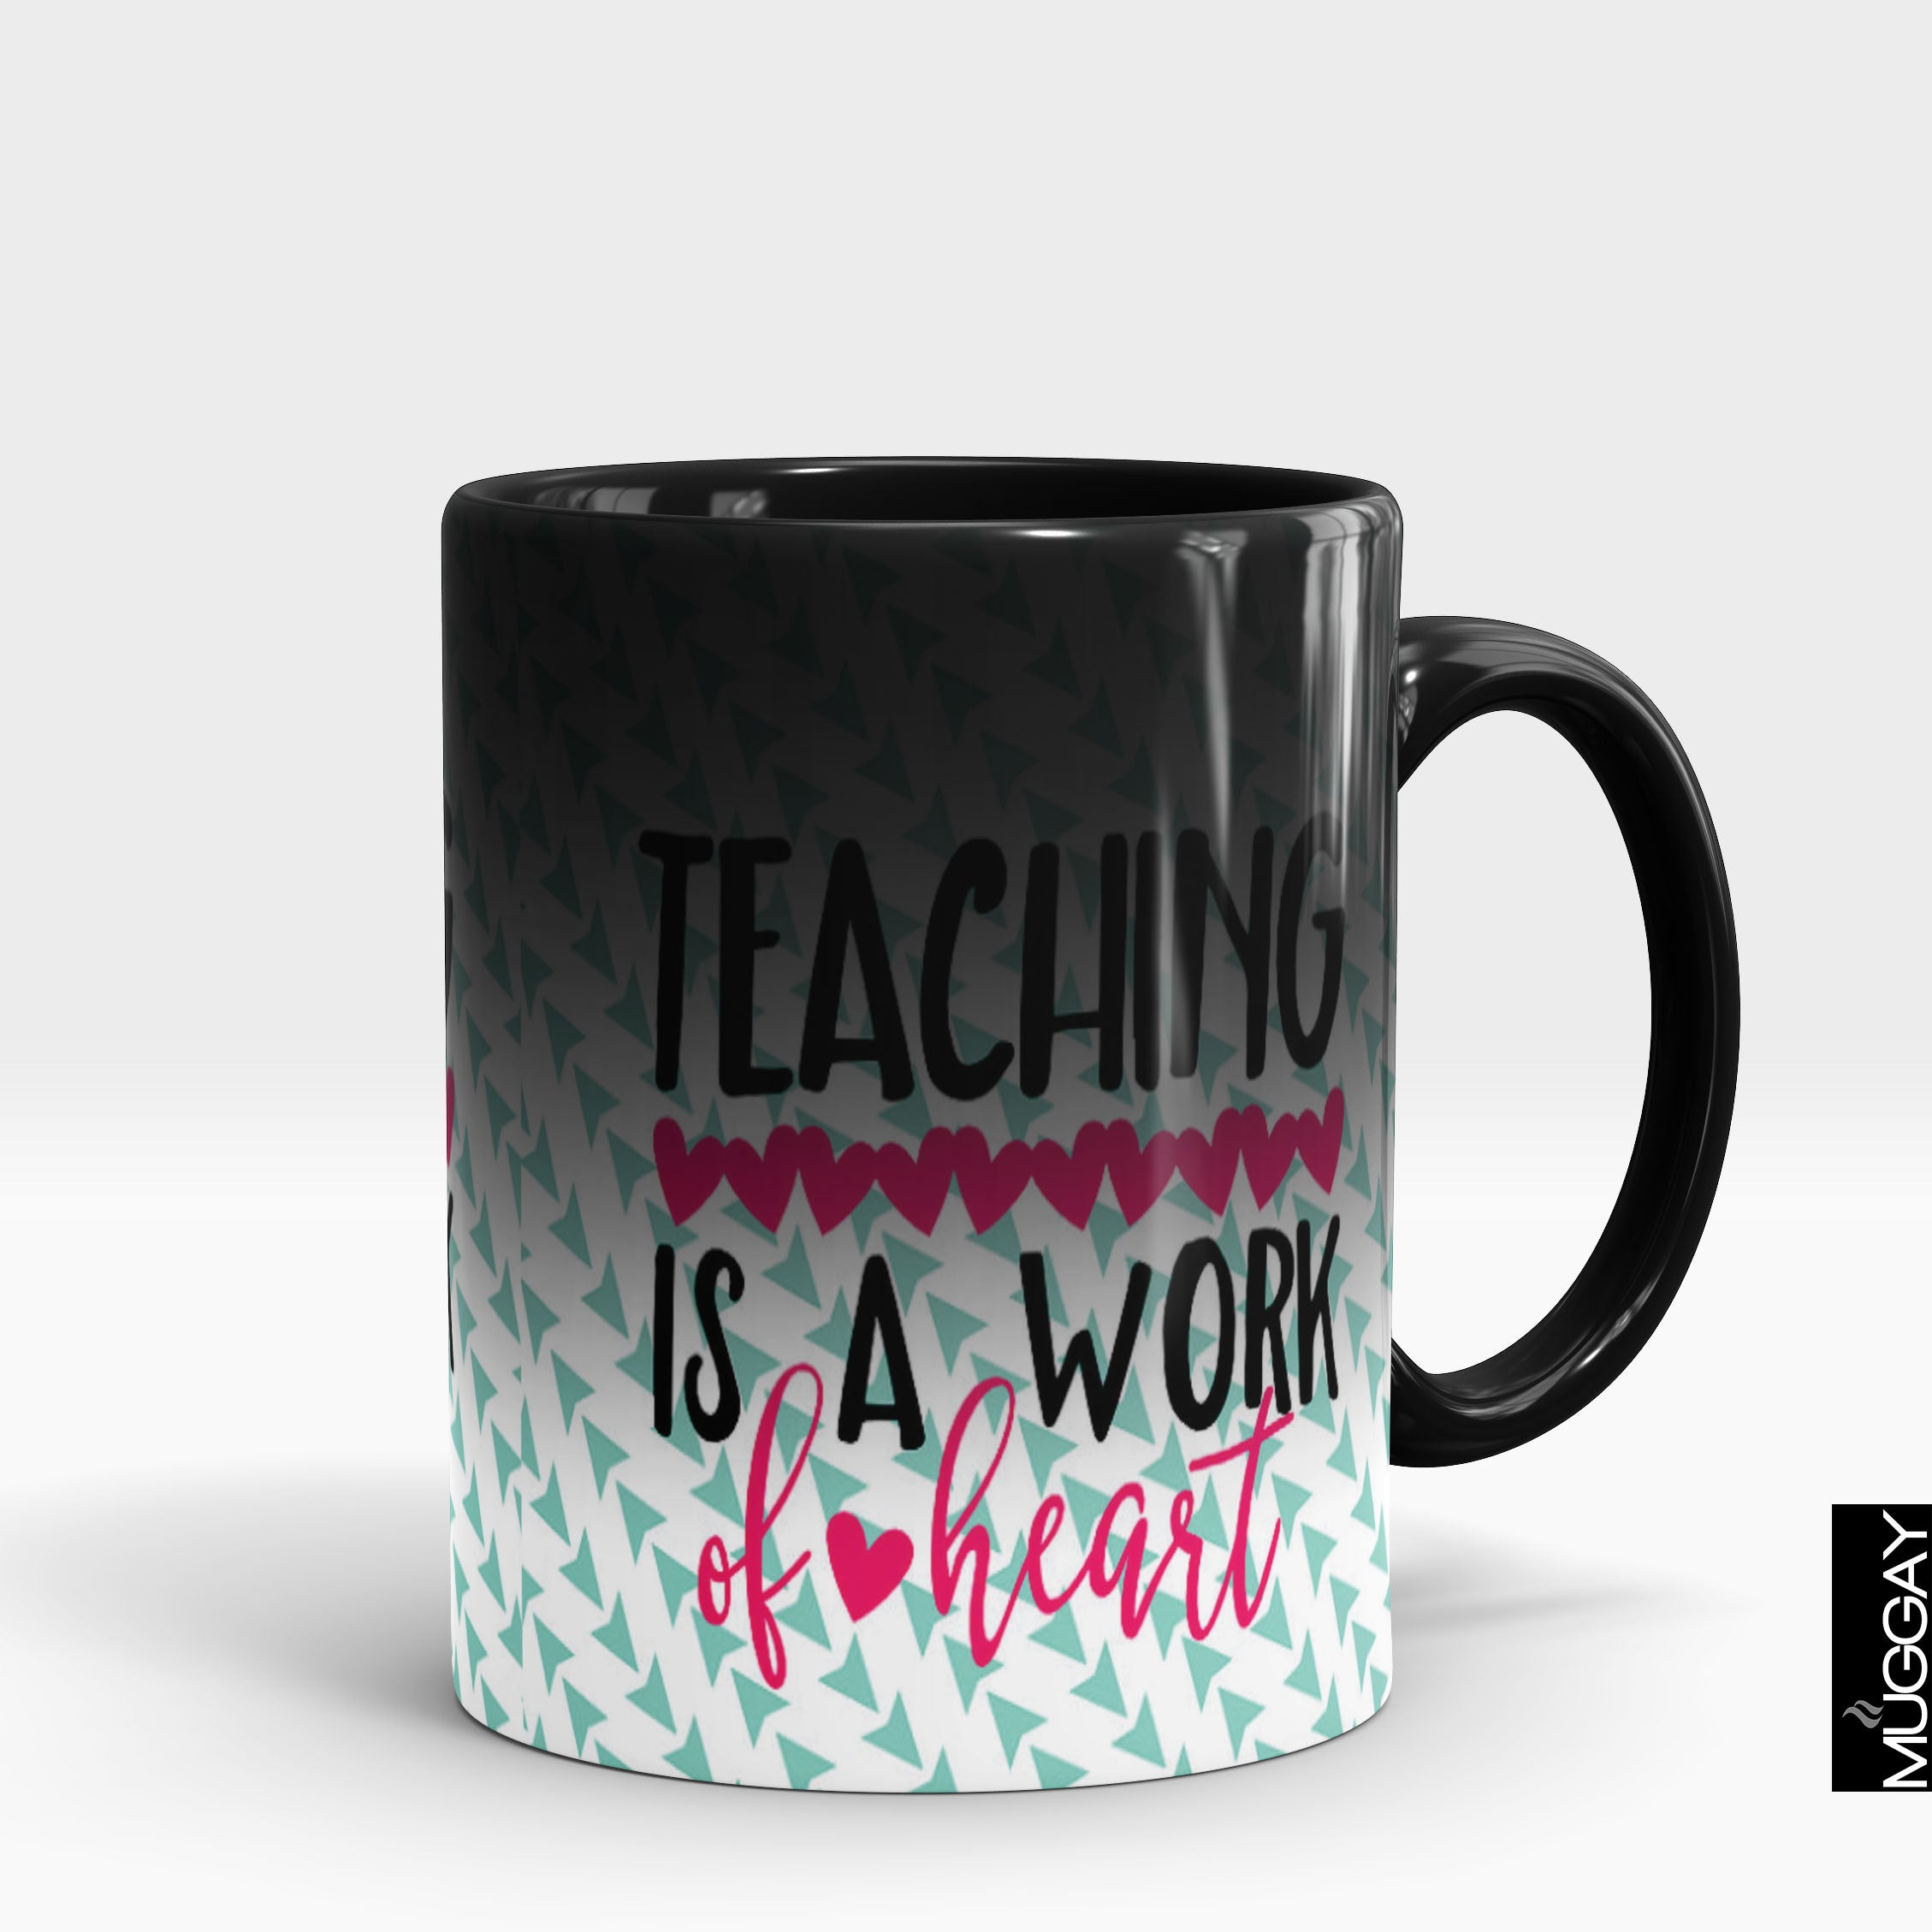 Mugs for Teachers -7